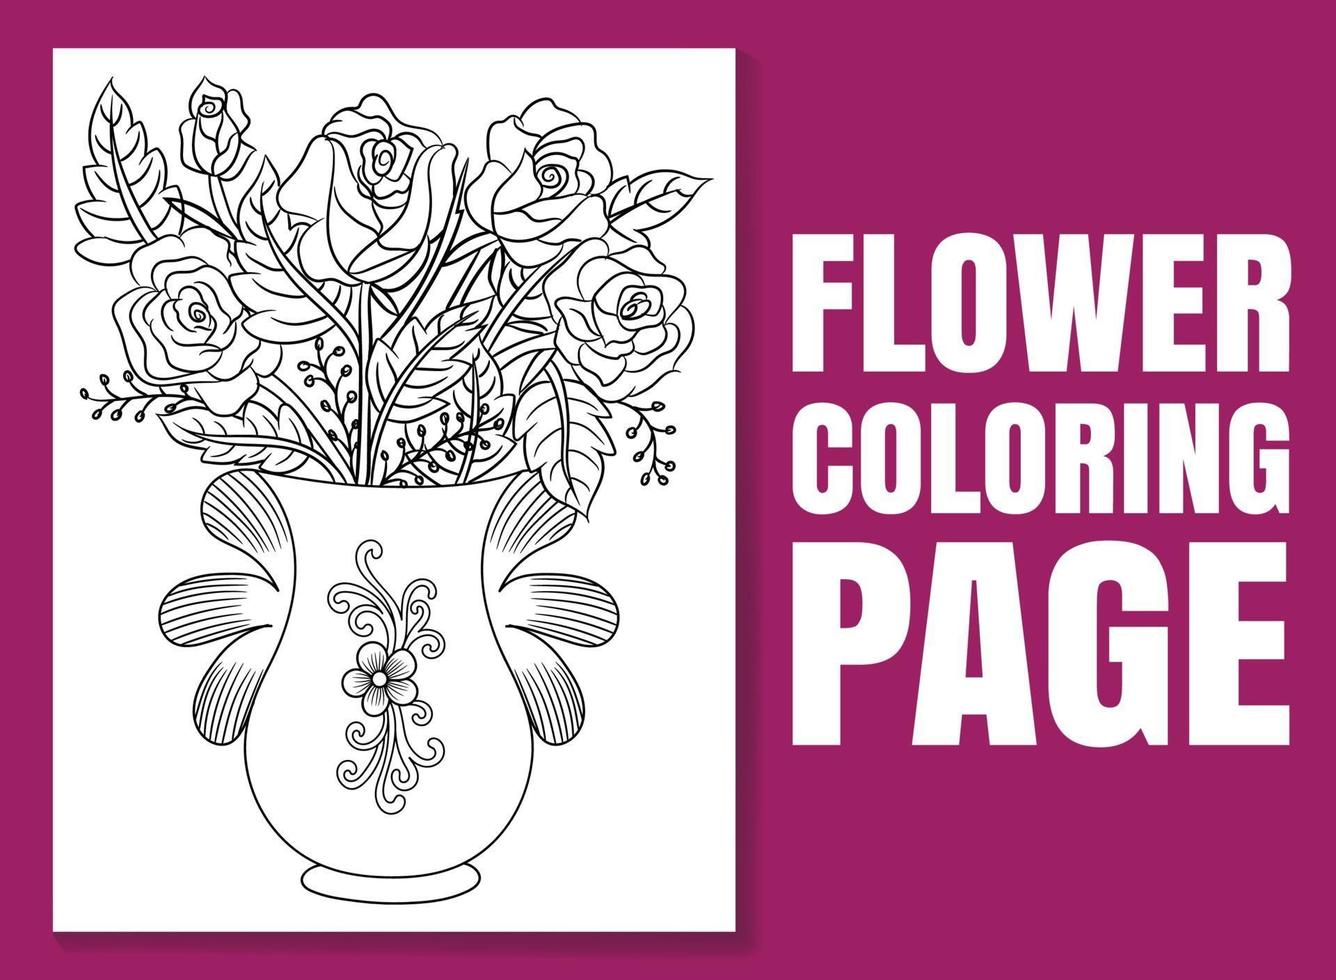 coloriage de fleurs pour adultes et enfants. coloriage doodle. vecteur